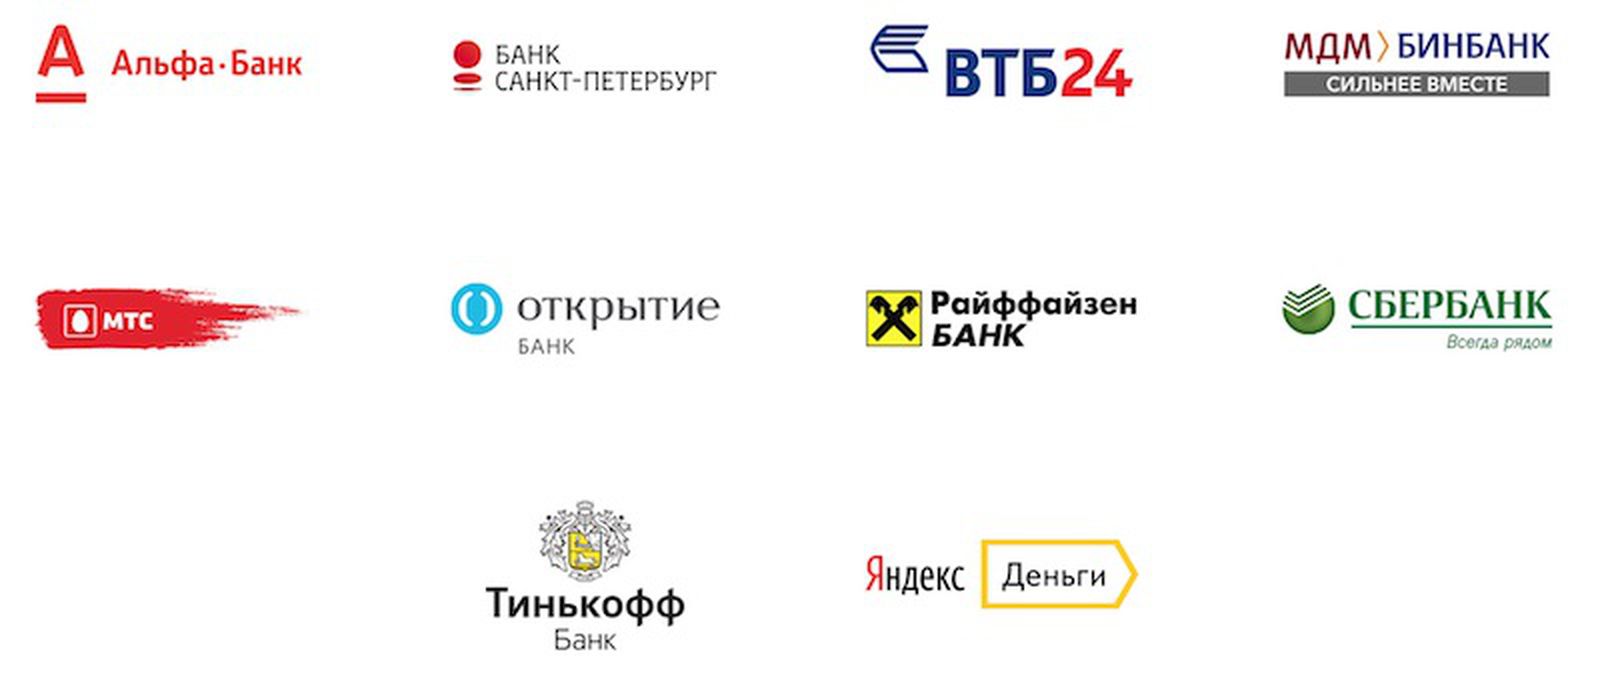 Список банков петербург. Банки партнеры. Российские банки. Список партнеров. Банки партнеры список.